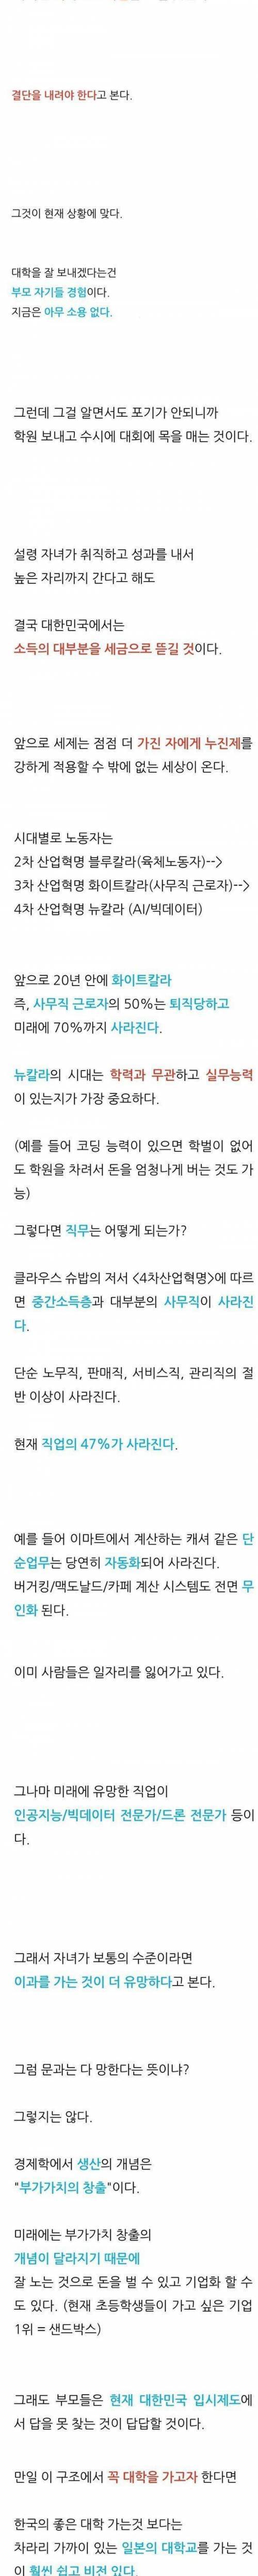 [스압] 메가스터디 손주은이 말하는 충격적인 한국의 미래.jpg